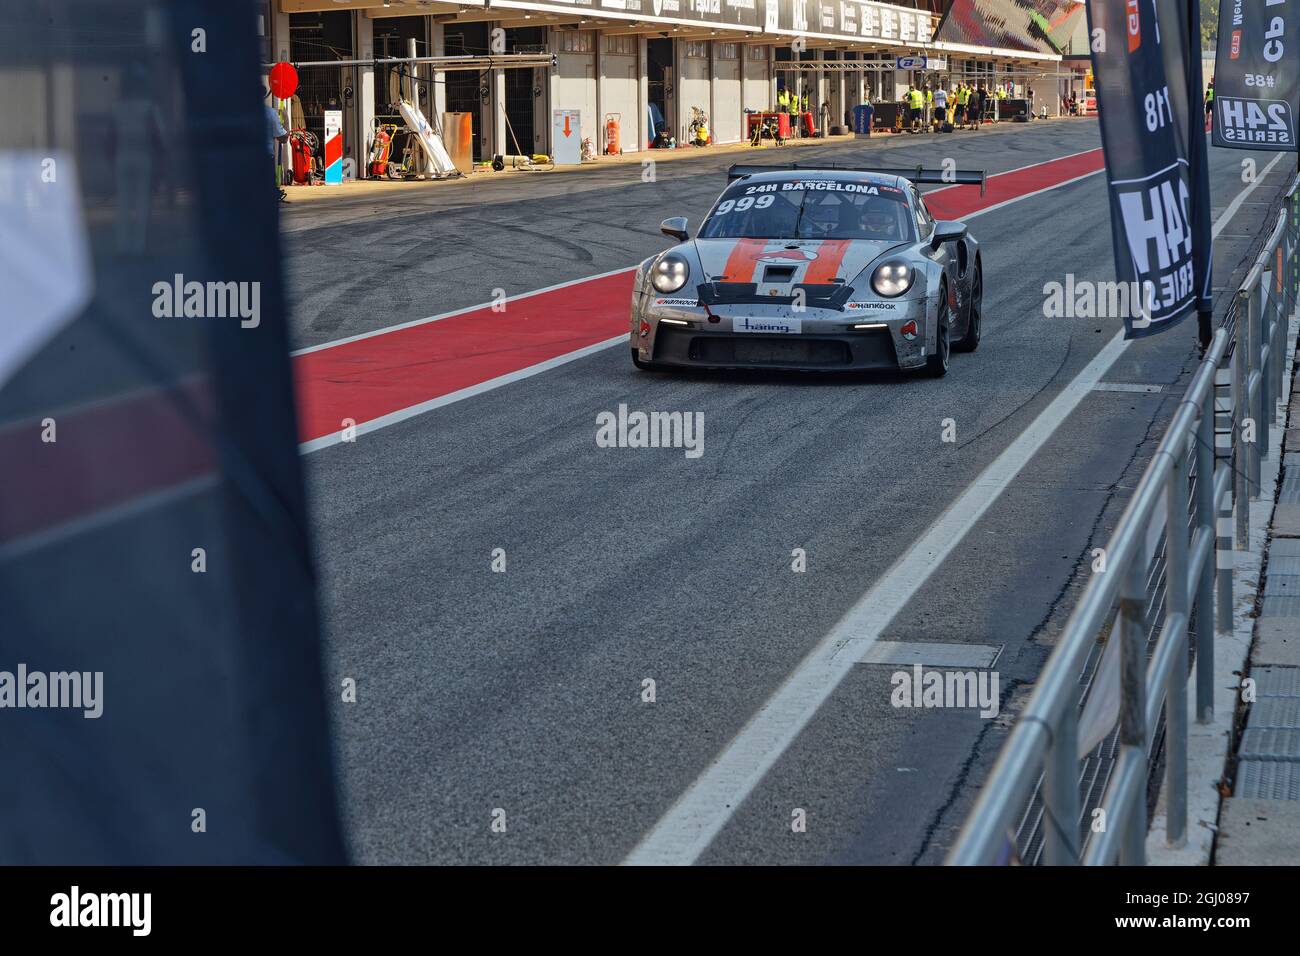 BARCELONE, ESPAGNE, 5 septembre 2021 : Porsche 911 dans le pitlane pendant la série 24h, un championnat international de course longue distance pour GT et Touri Banque D'Images